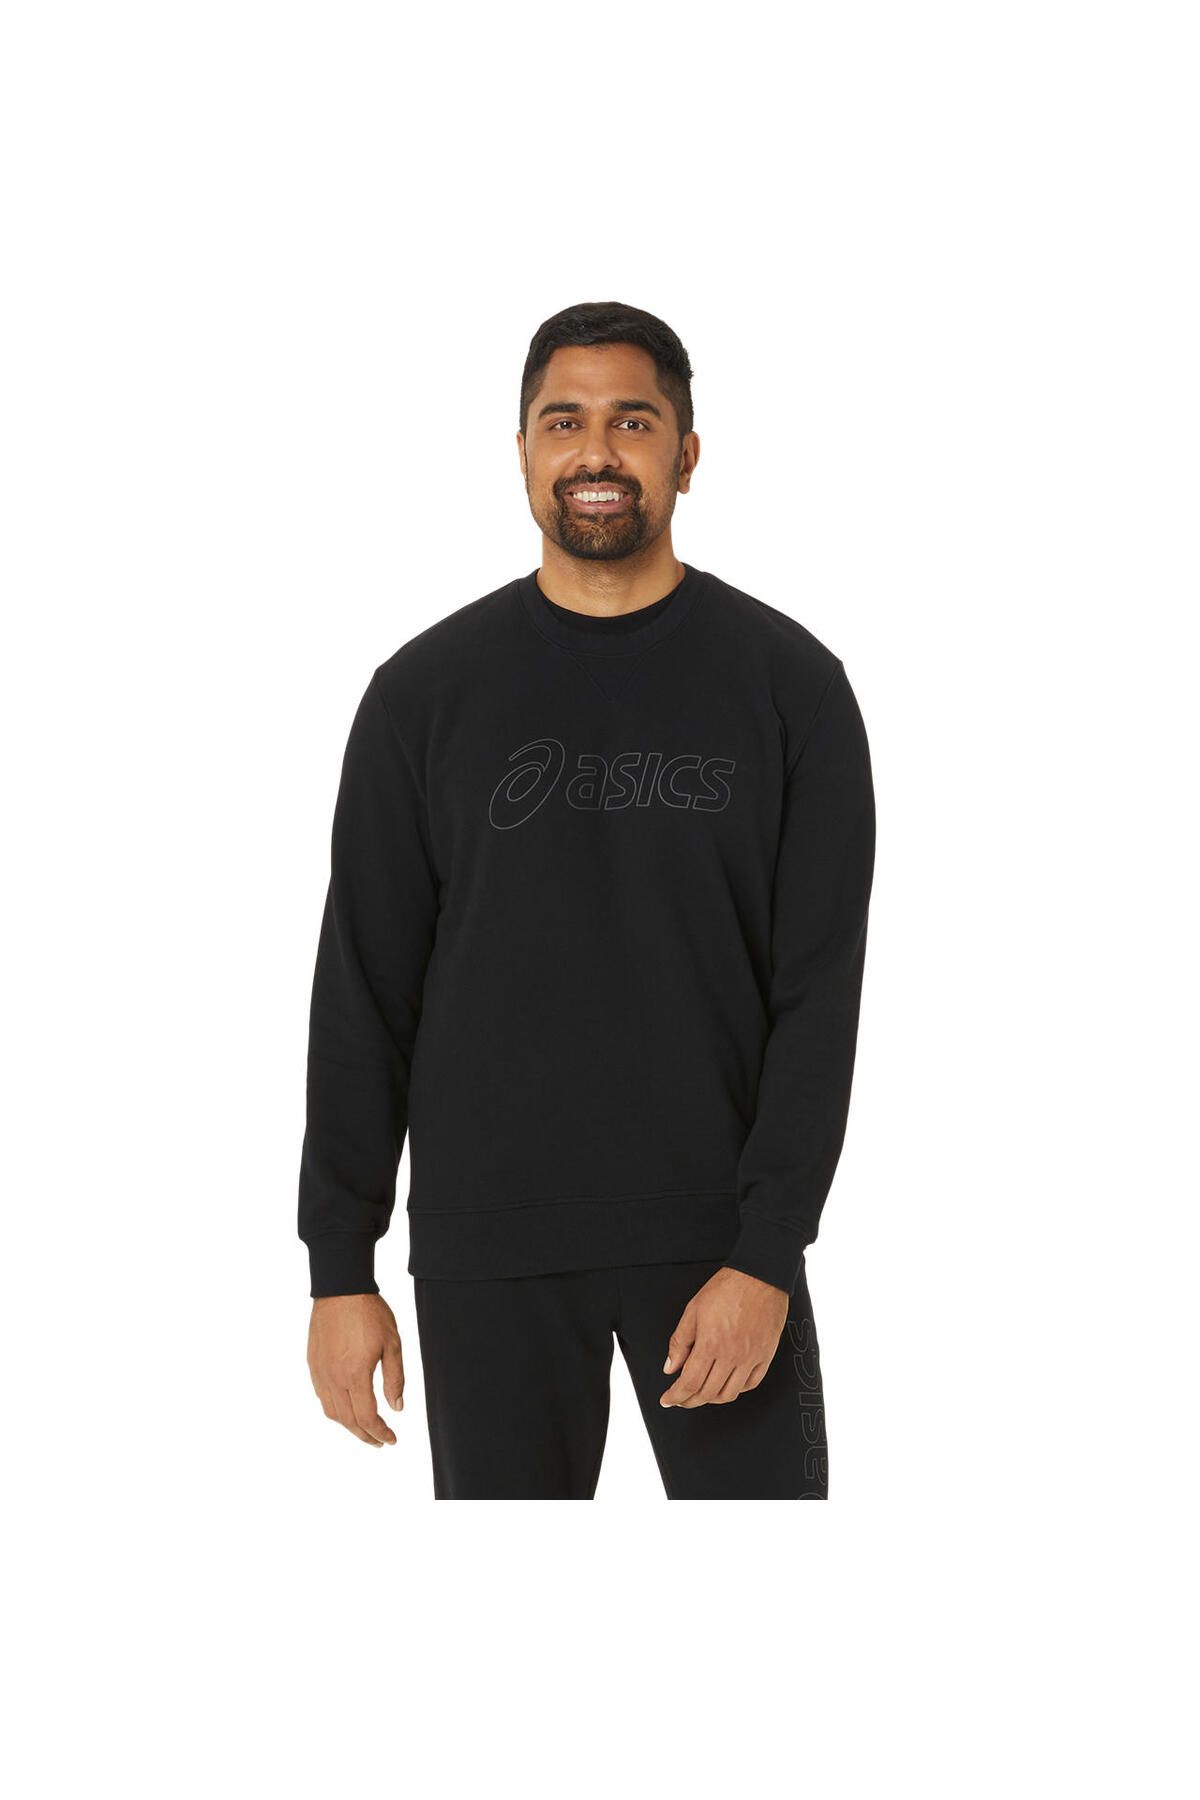 Asics Sweatshirt Erkek Siyah 2031e192-002